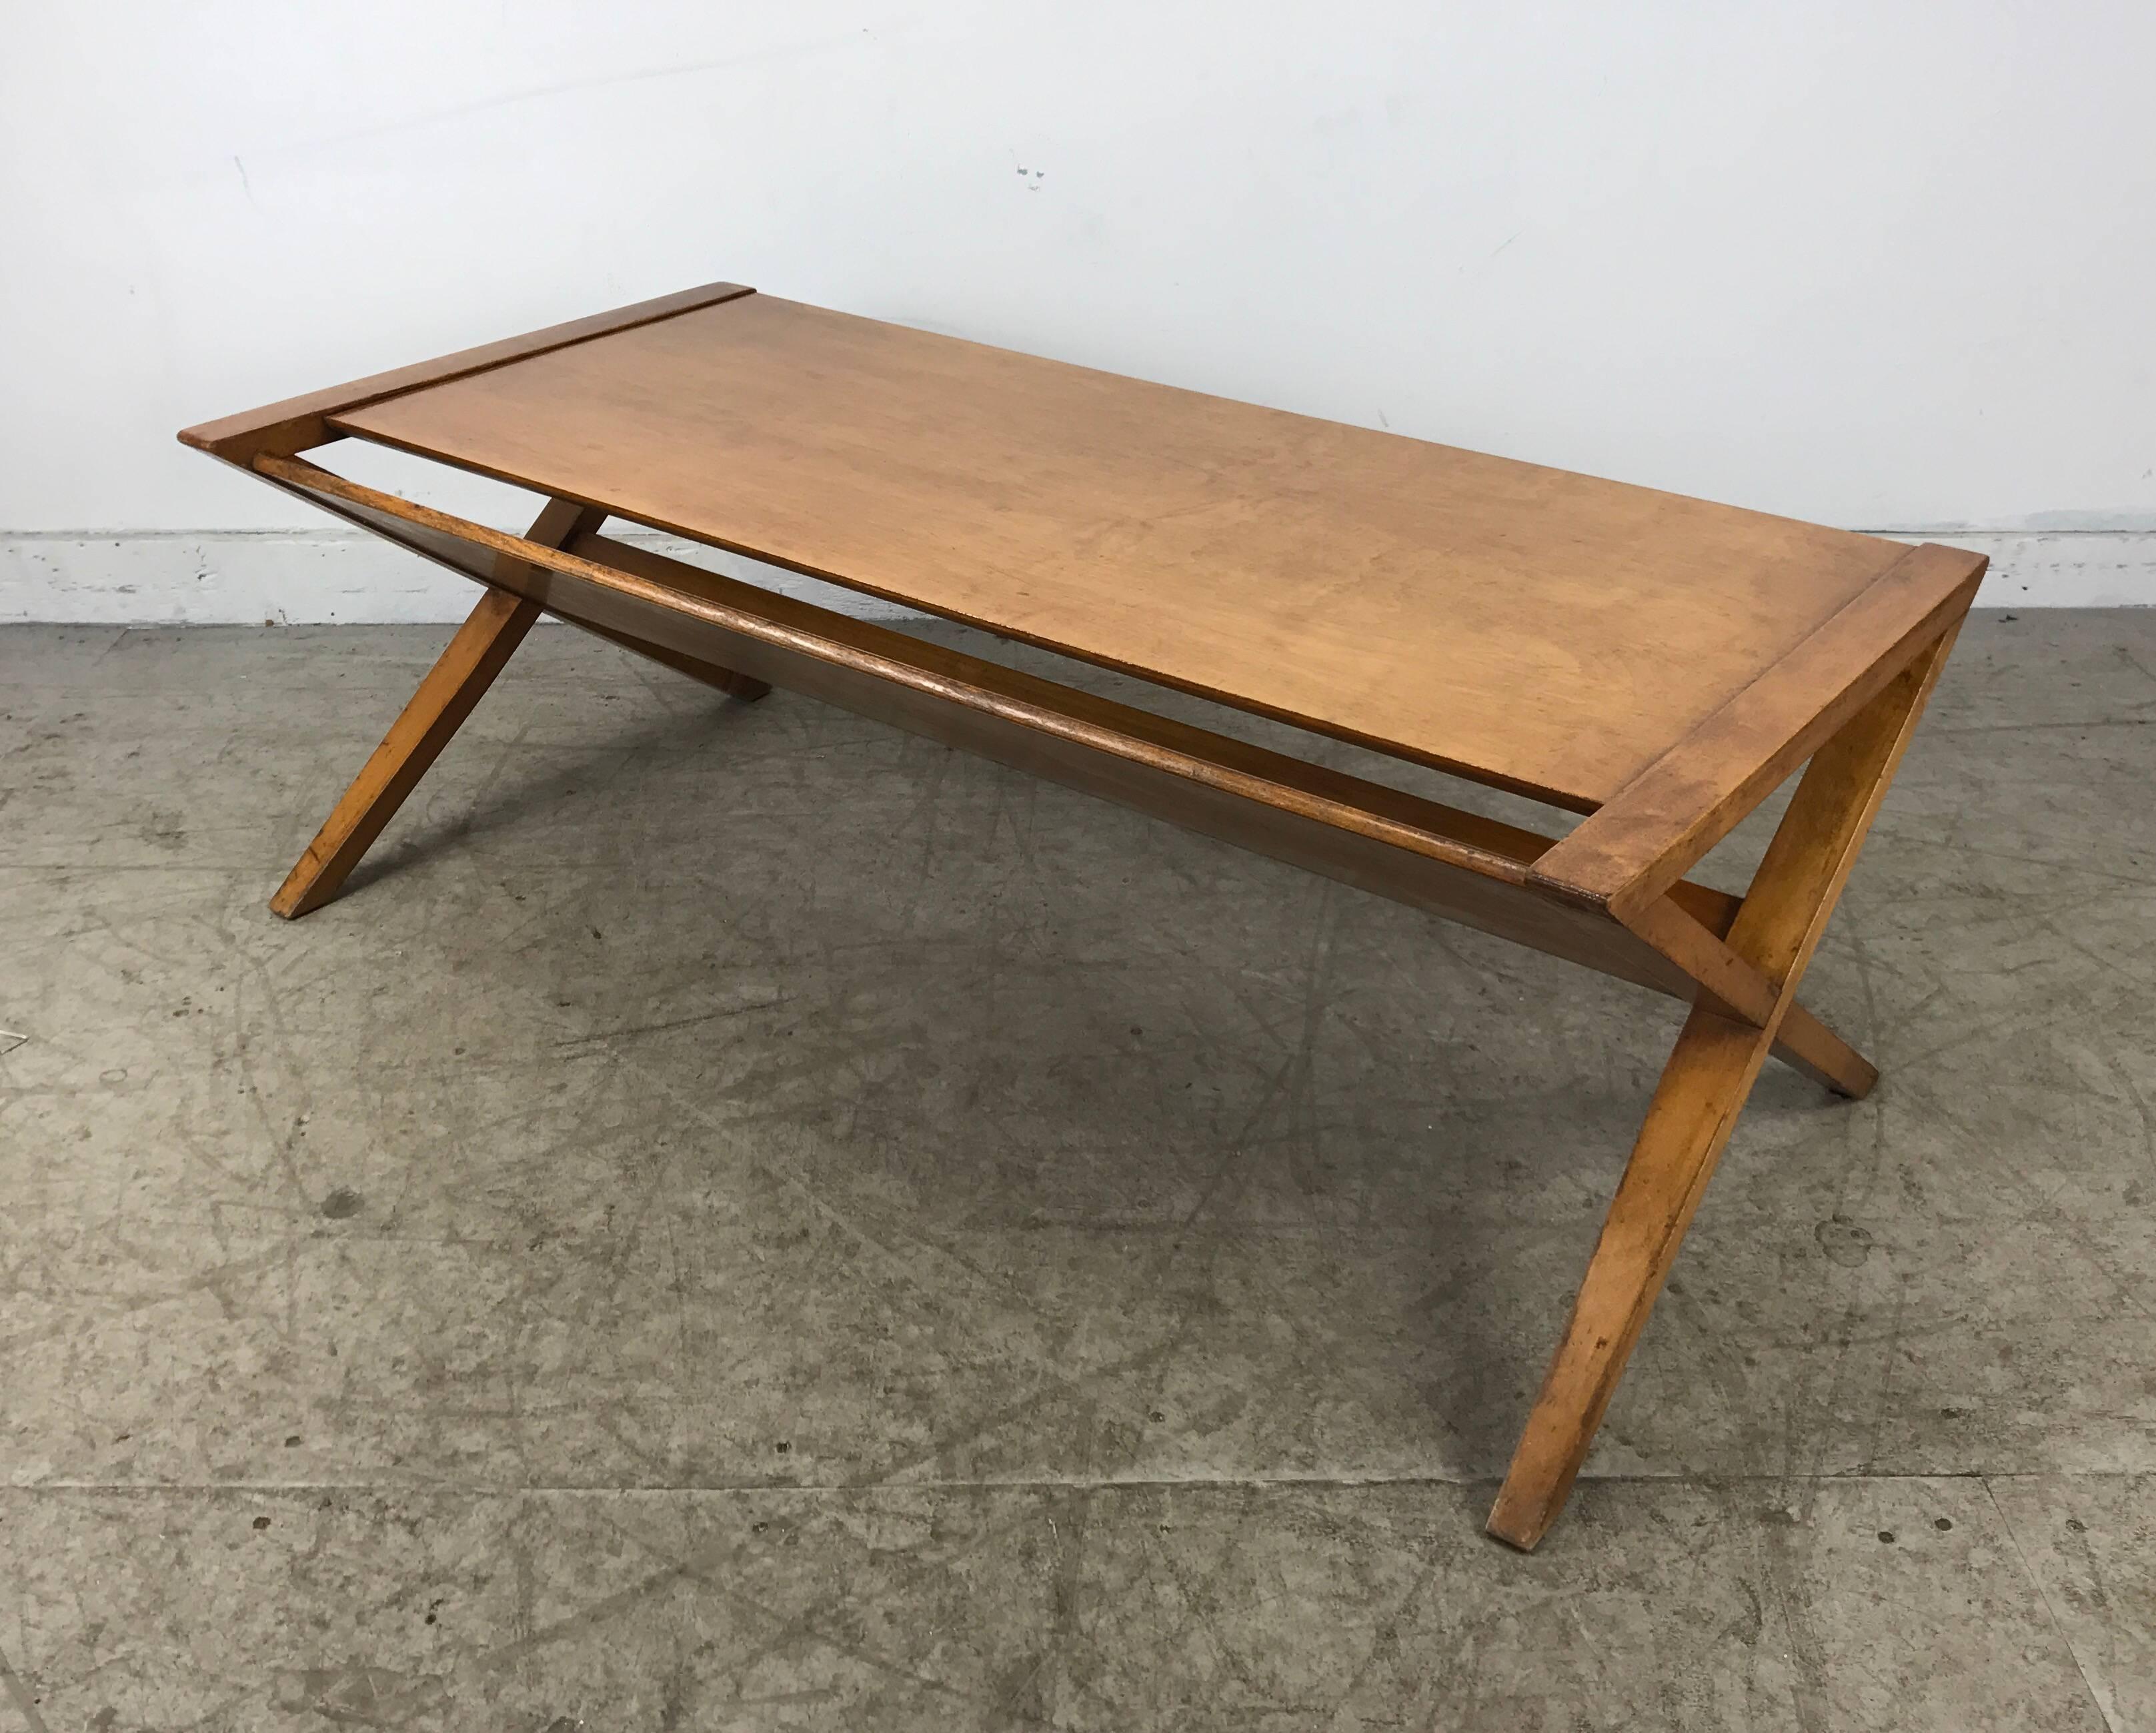 Modernist blonde mahogany coffee / magazine table. X-sides. Manner of Robsjohn Gibbings, Classic Modernist design.